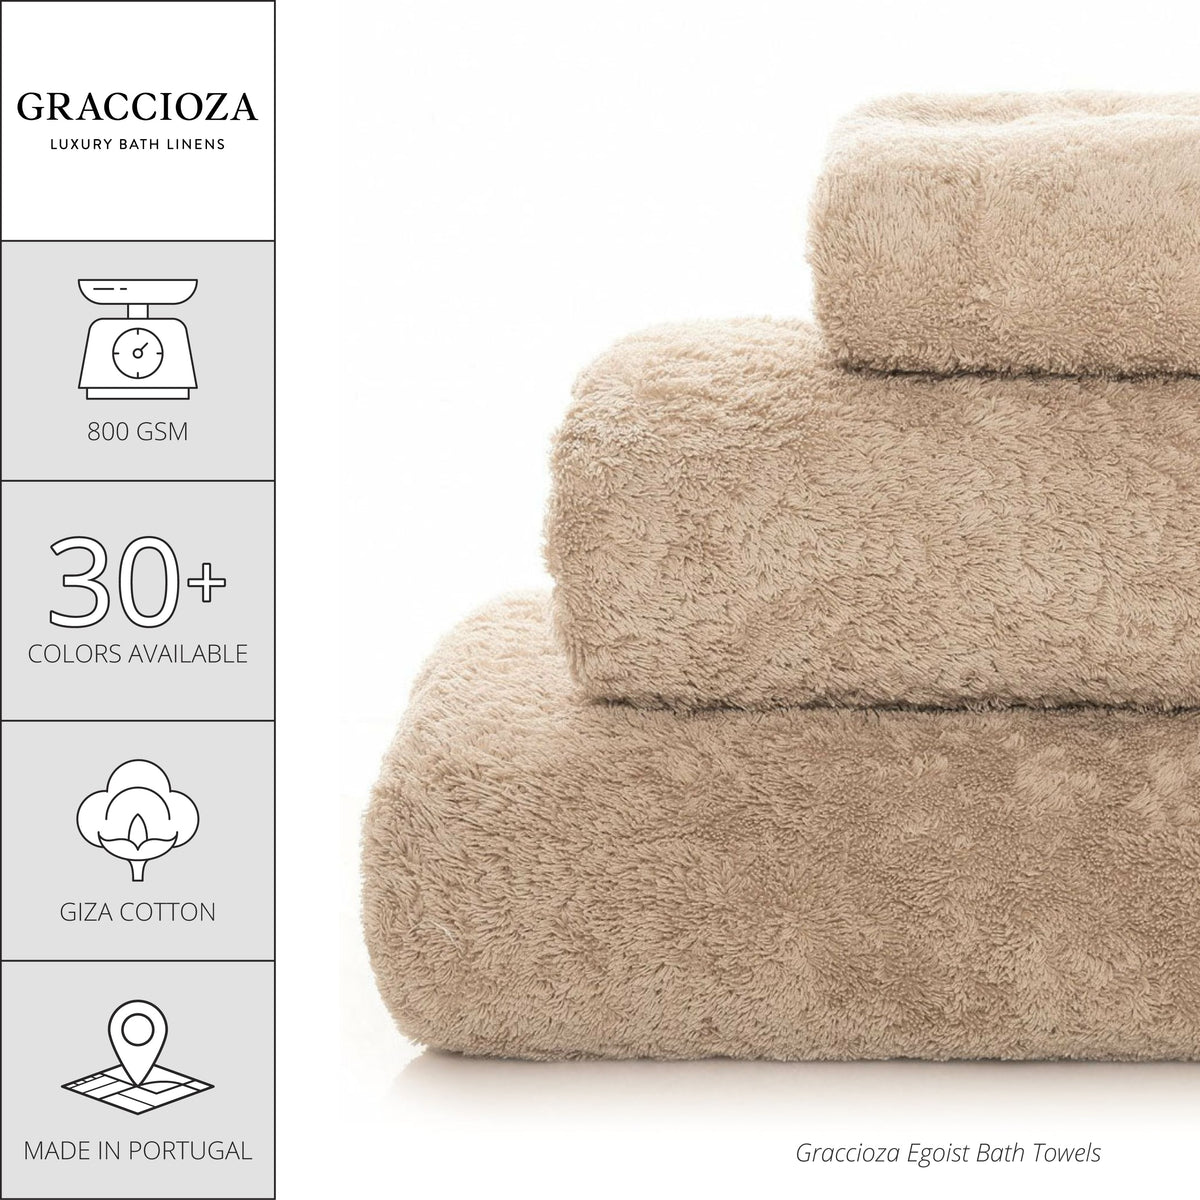 Graccioza Egoist Bath Towels - Linen